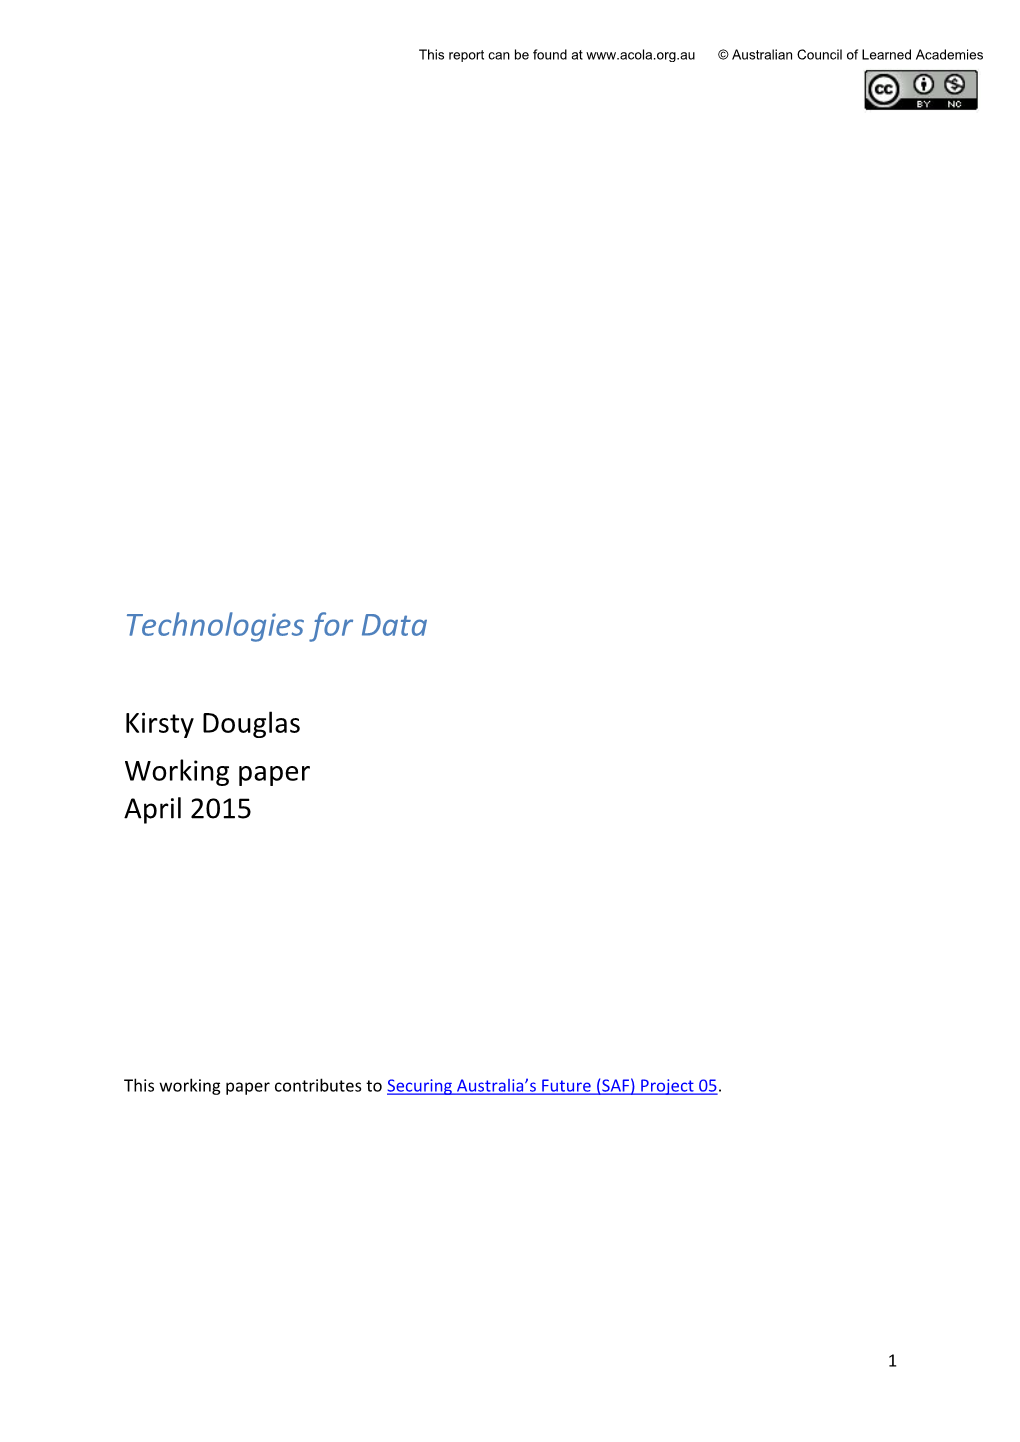 Technologies for Data